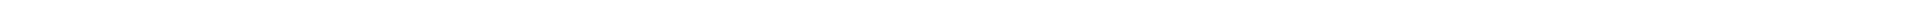 Стоматологическое обследование в Алматы, Астане (Нур-Султан), Атырау, Усть-Каменогорск, Уральск, Кокшетау в Казахстане, фото 8